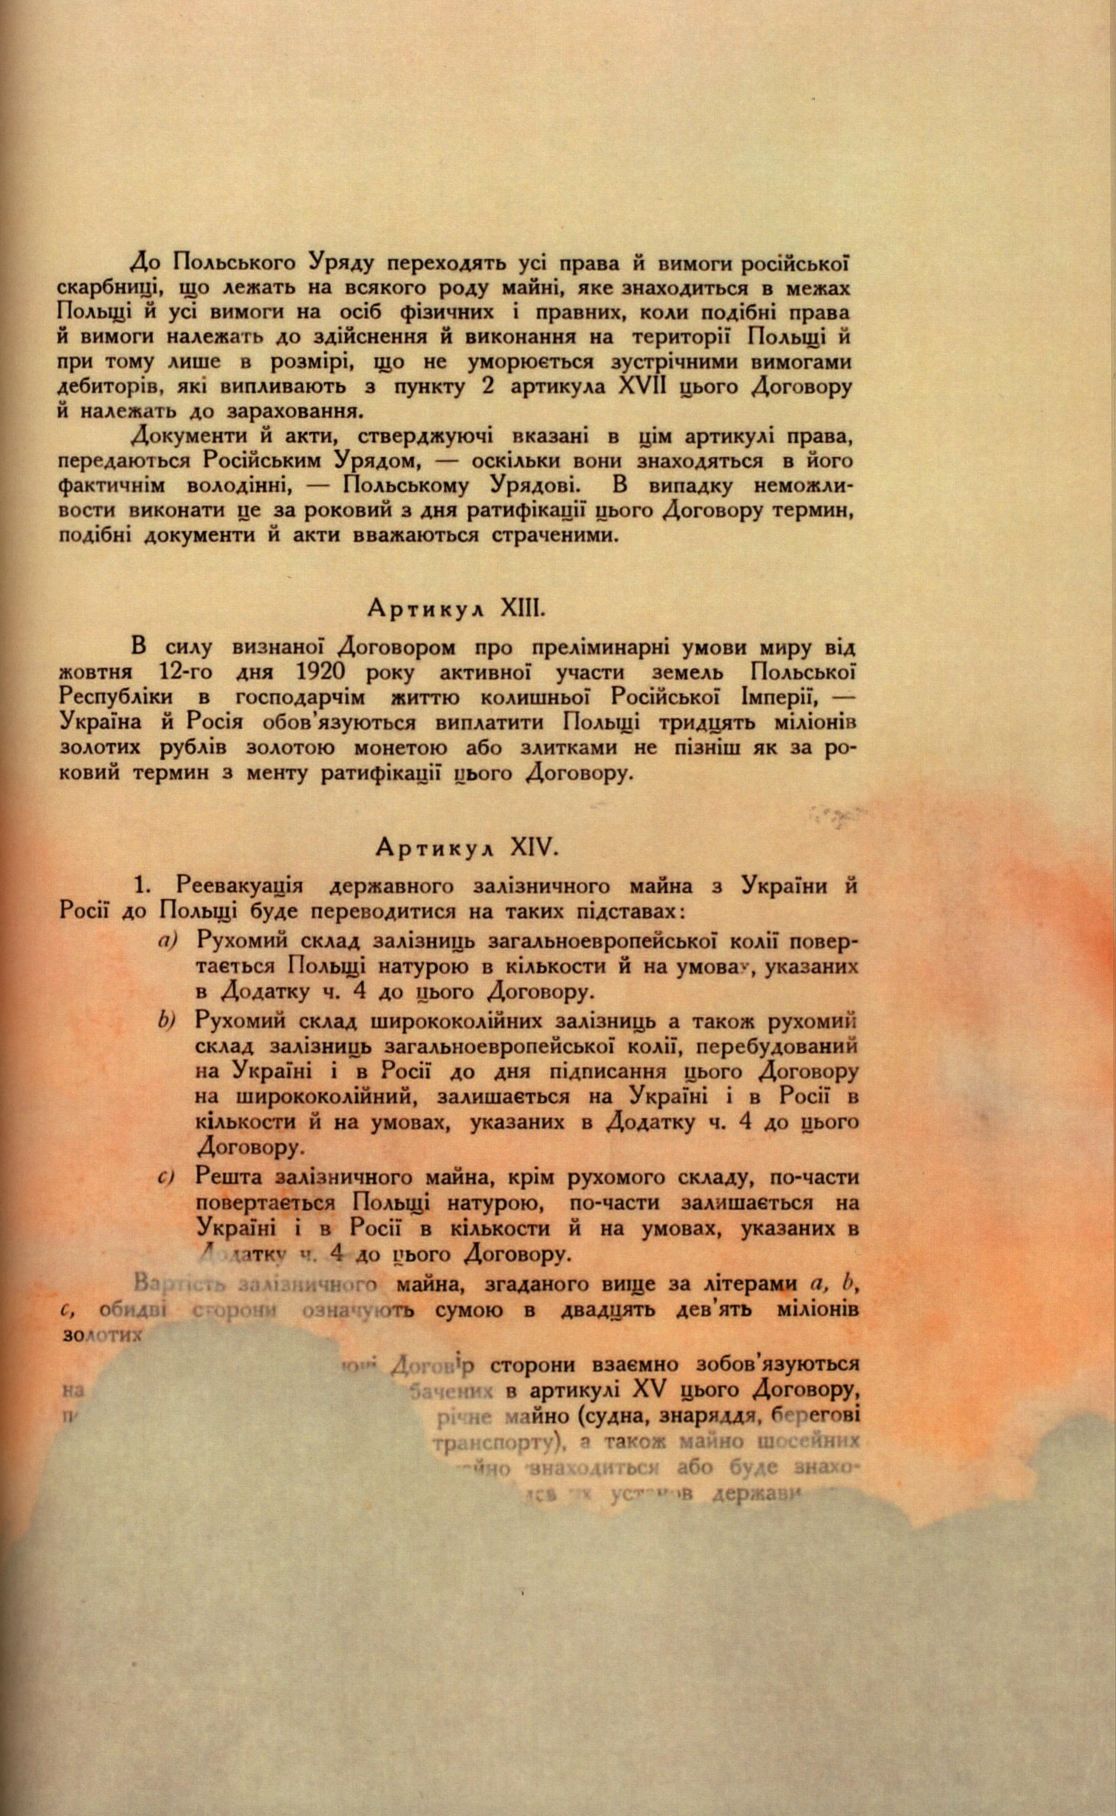 Traktat Pokoju między Polską a Rosją i Ukrainą podpisany w Rydze dnia 18 marca 1921 roku, s. 47, MSZ, sygn. 6739.